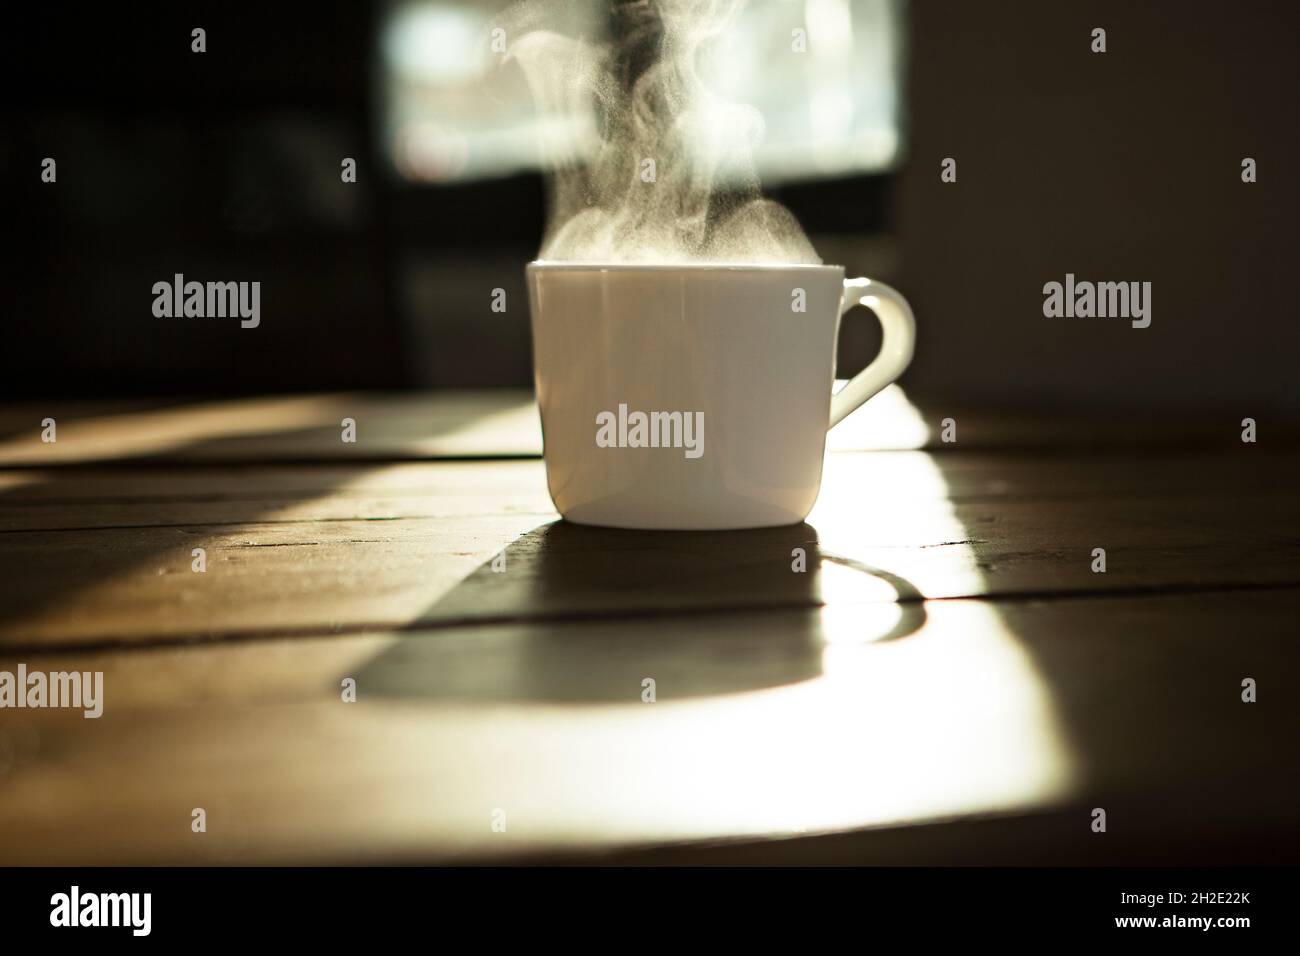 Tasse à café/thé blanc, tasse blanche avec boisson chaude sur table en bois, rétro-éclairée. Banque D'Images